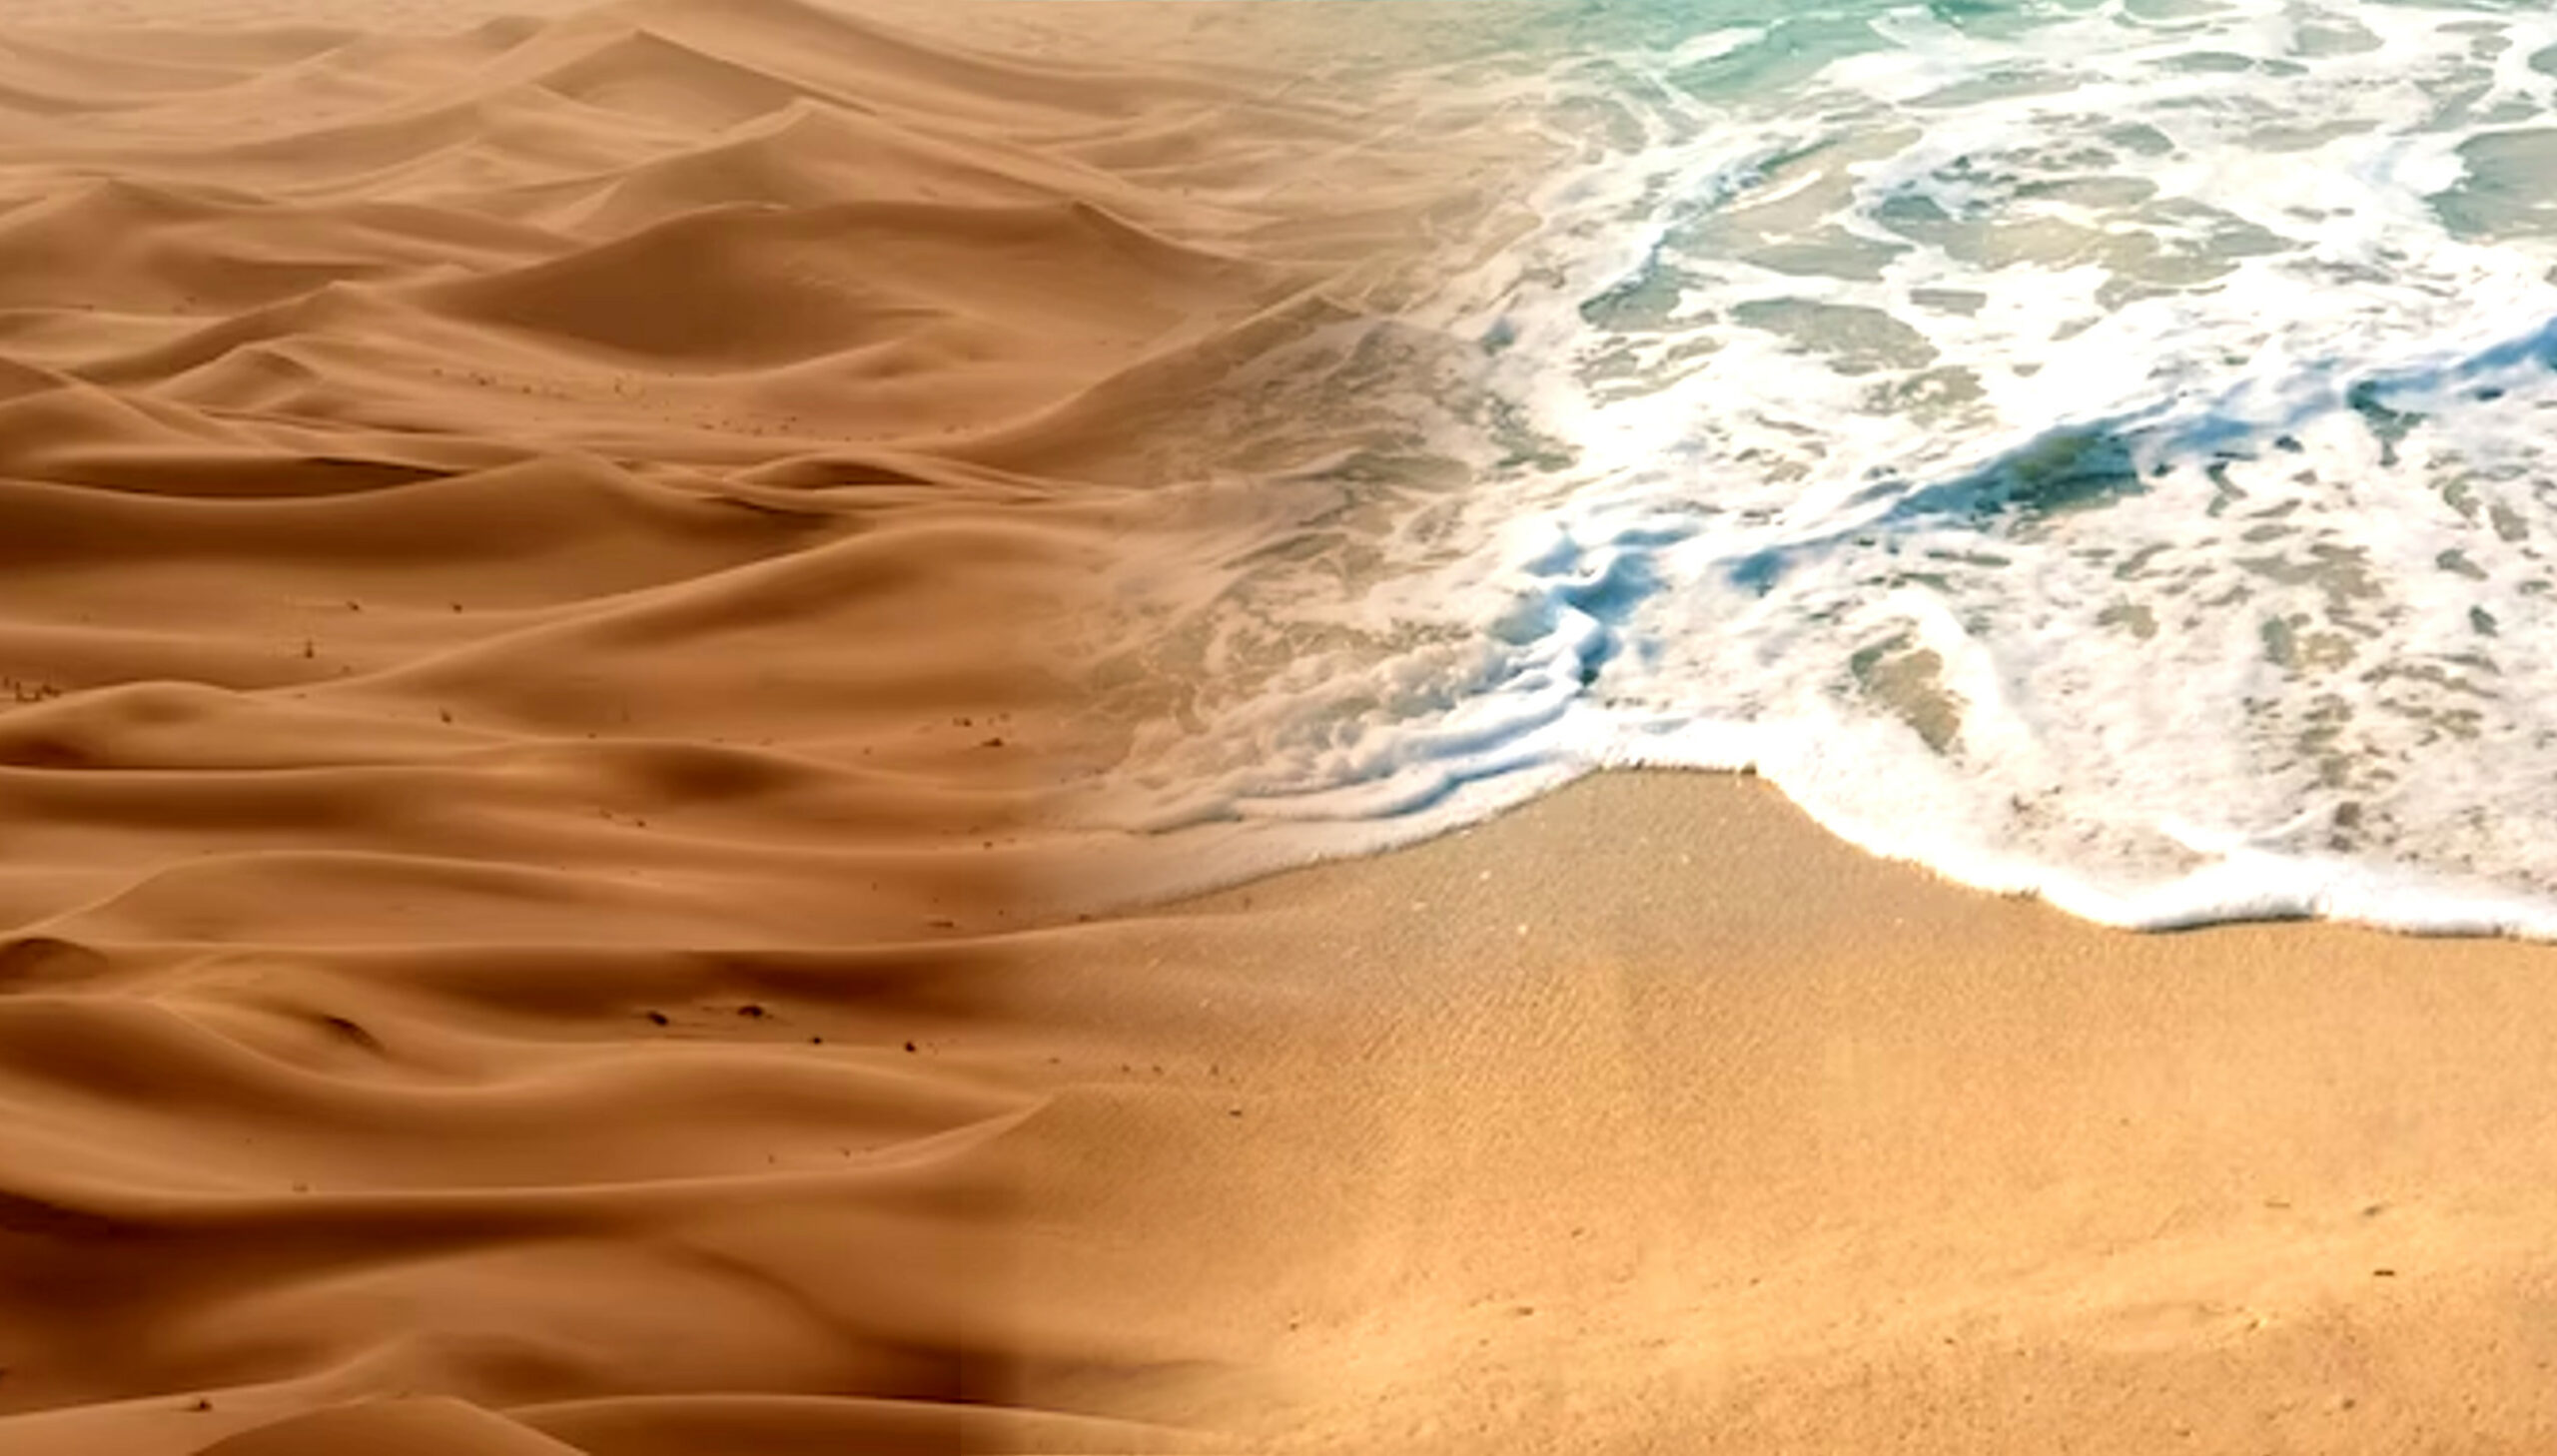 Ørkensand (venstre) vs strandsand (ret) sammenligning, der viser forskellene i farve og tekstur.